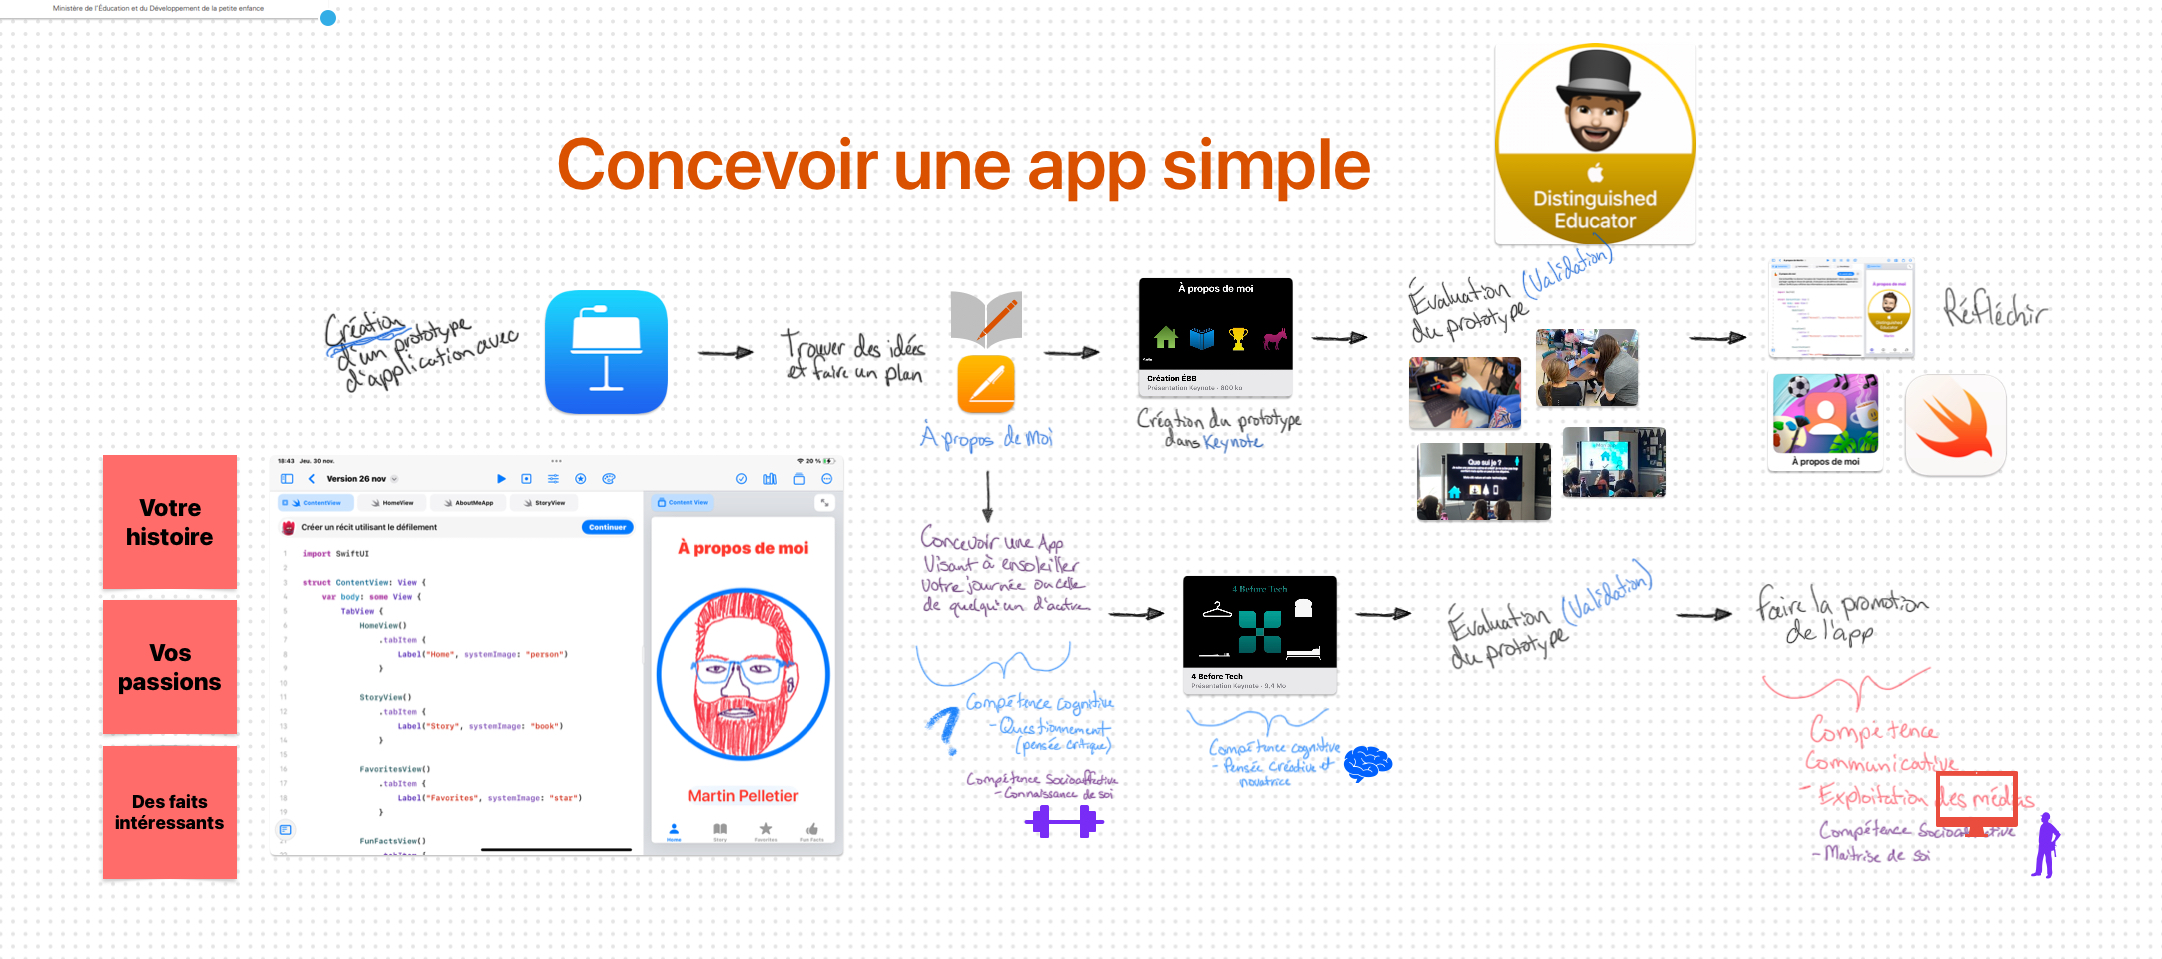 Schéma expliquant les étapes de création d’une app simple.